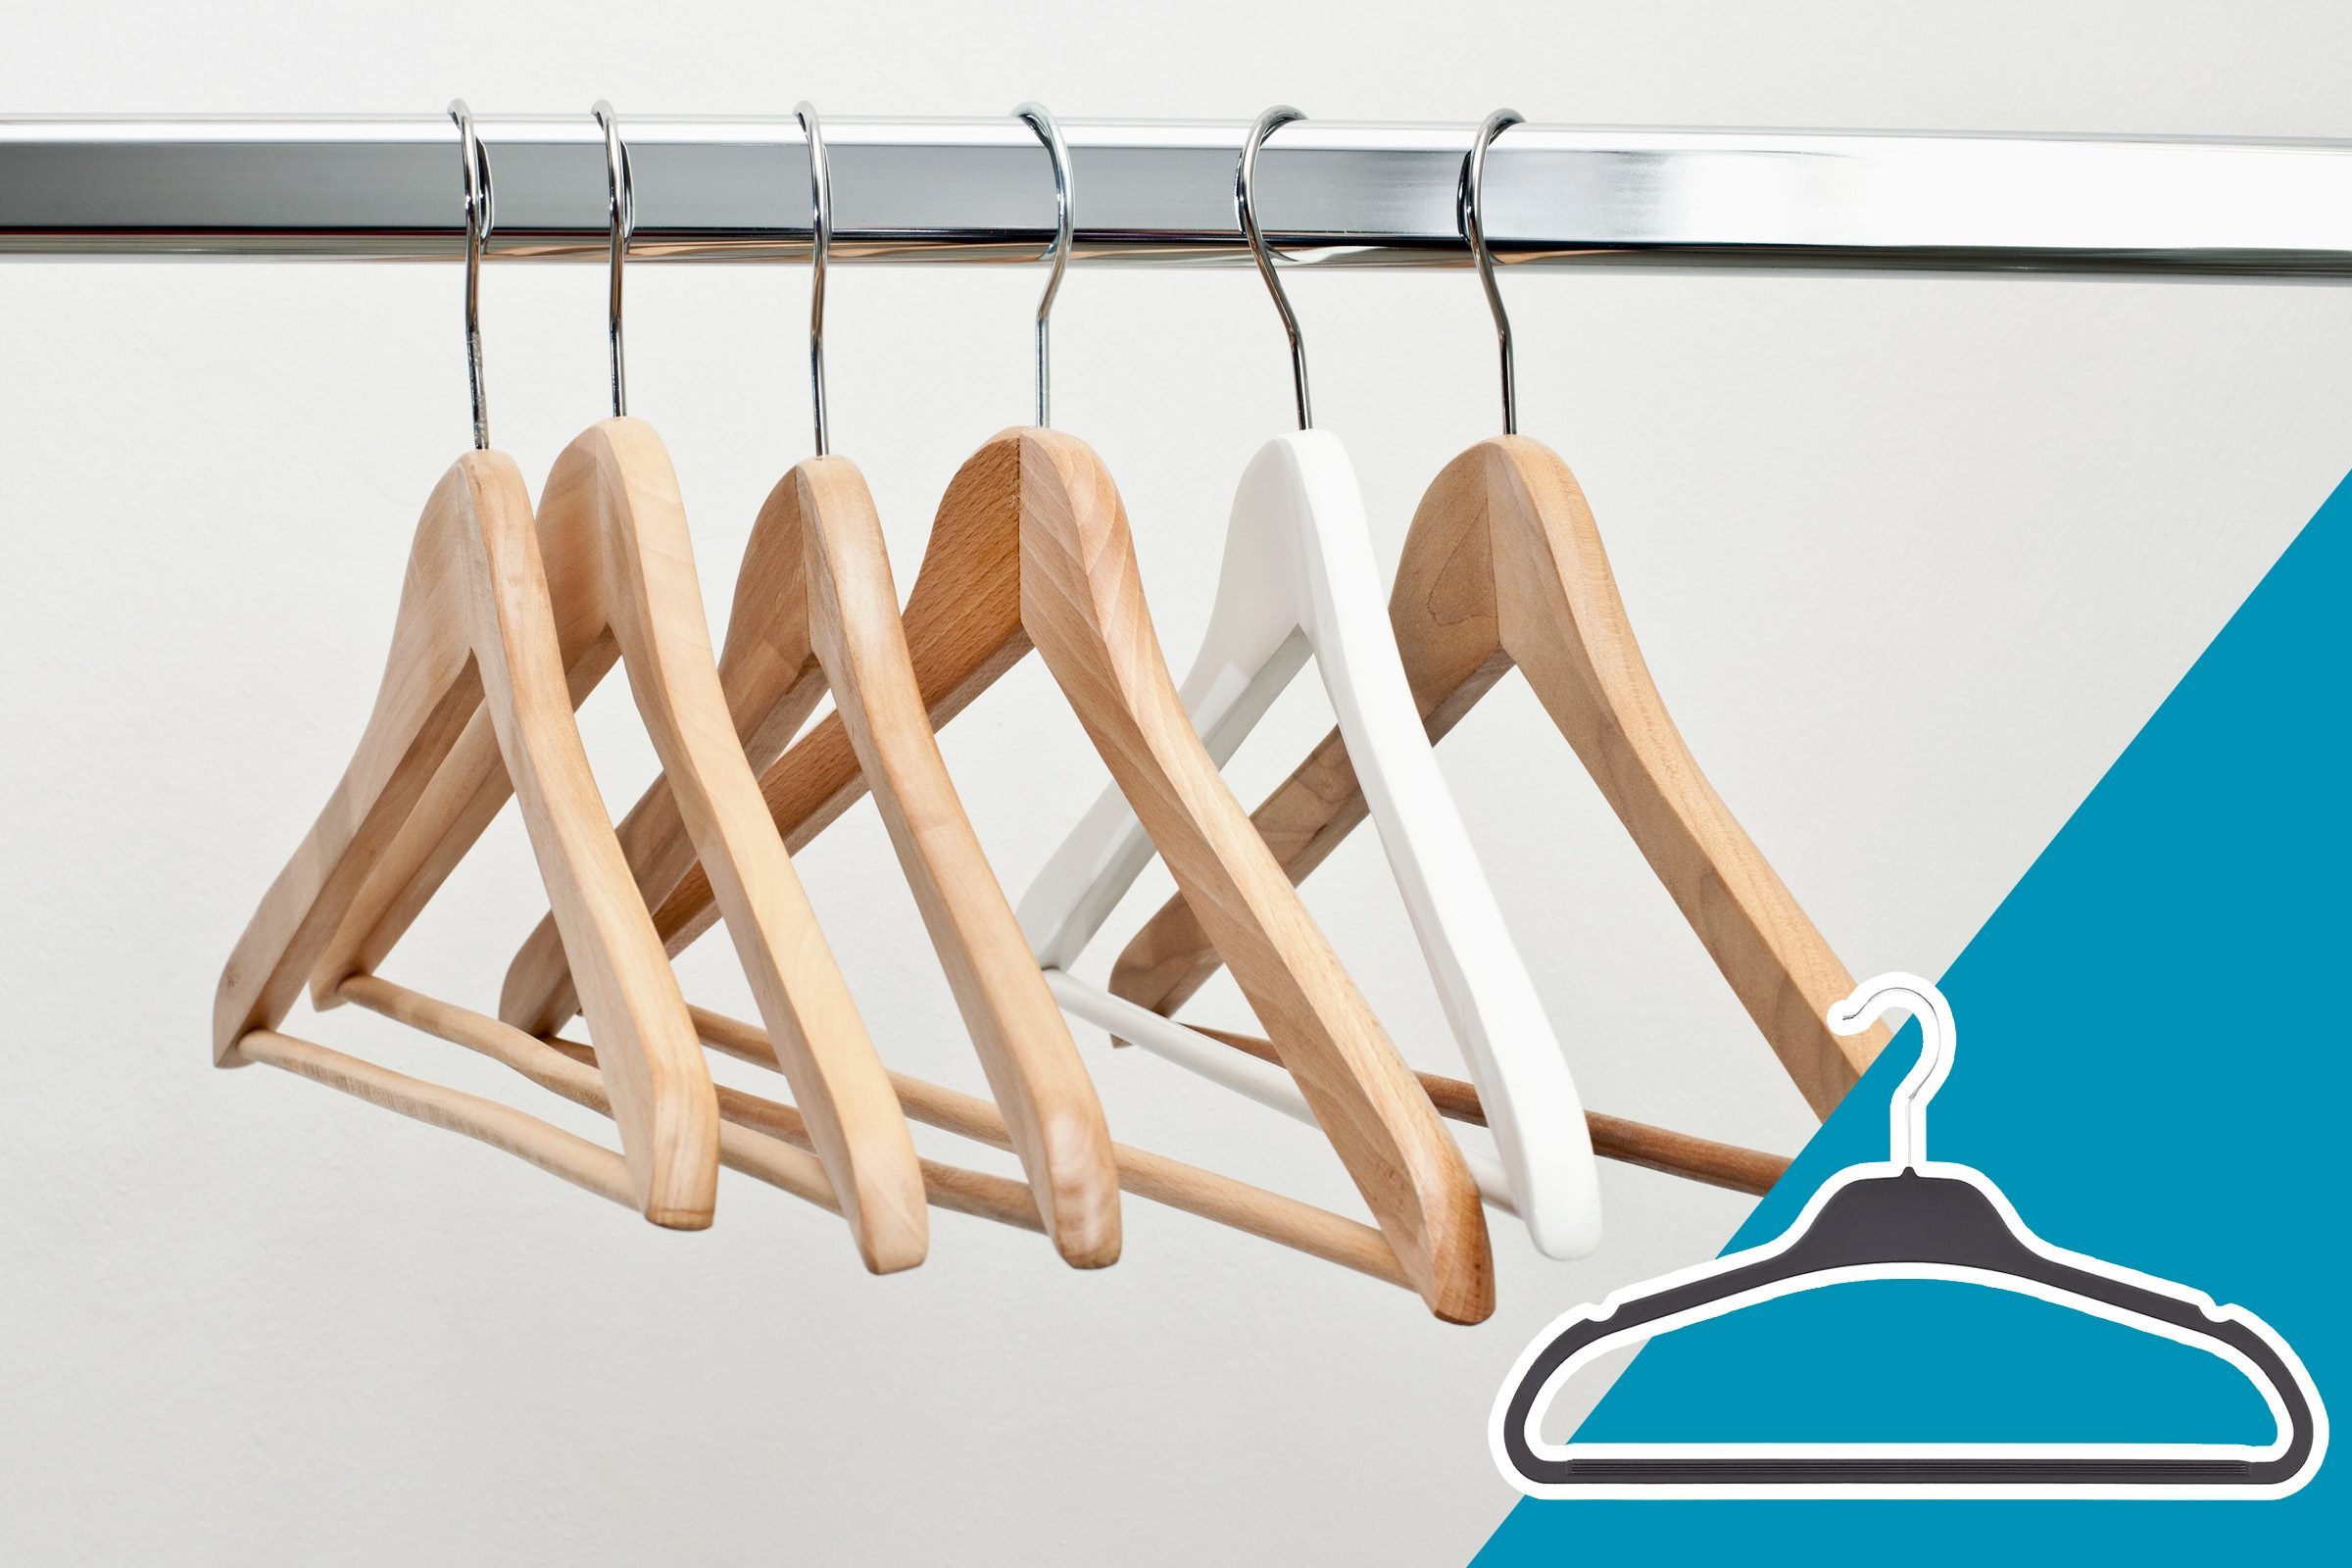 15 mẹo giúp tủ quần áo của bạn luôn gọn gàng, ngăn nắp và thời trang - Ảnh 3.